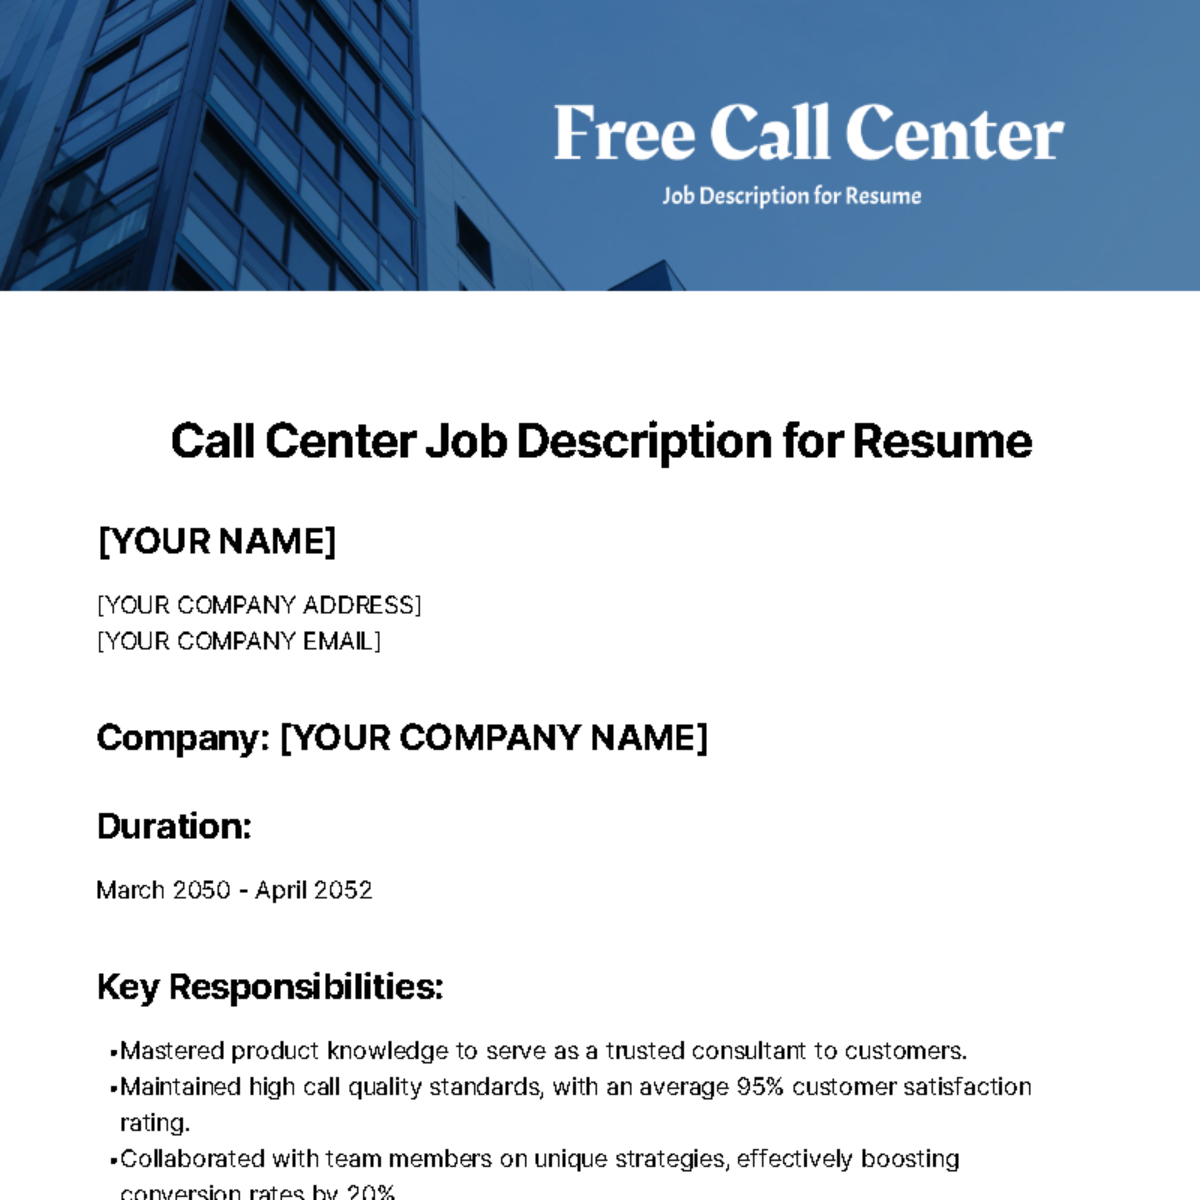 Free Call Center Job Description for Resume Template